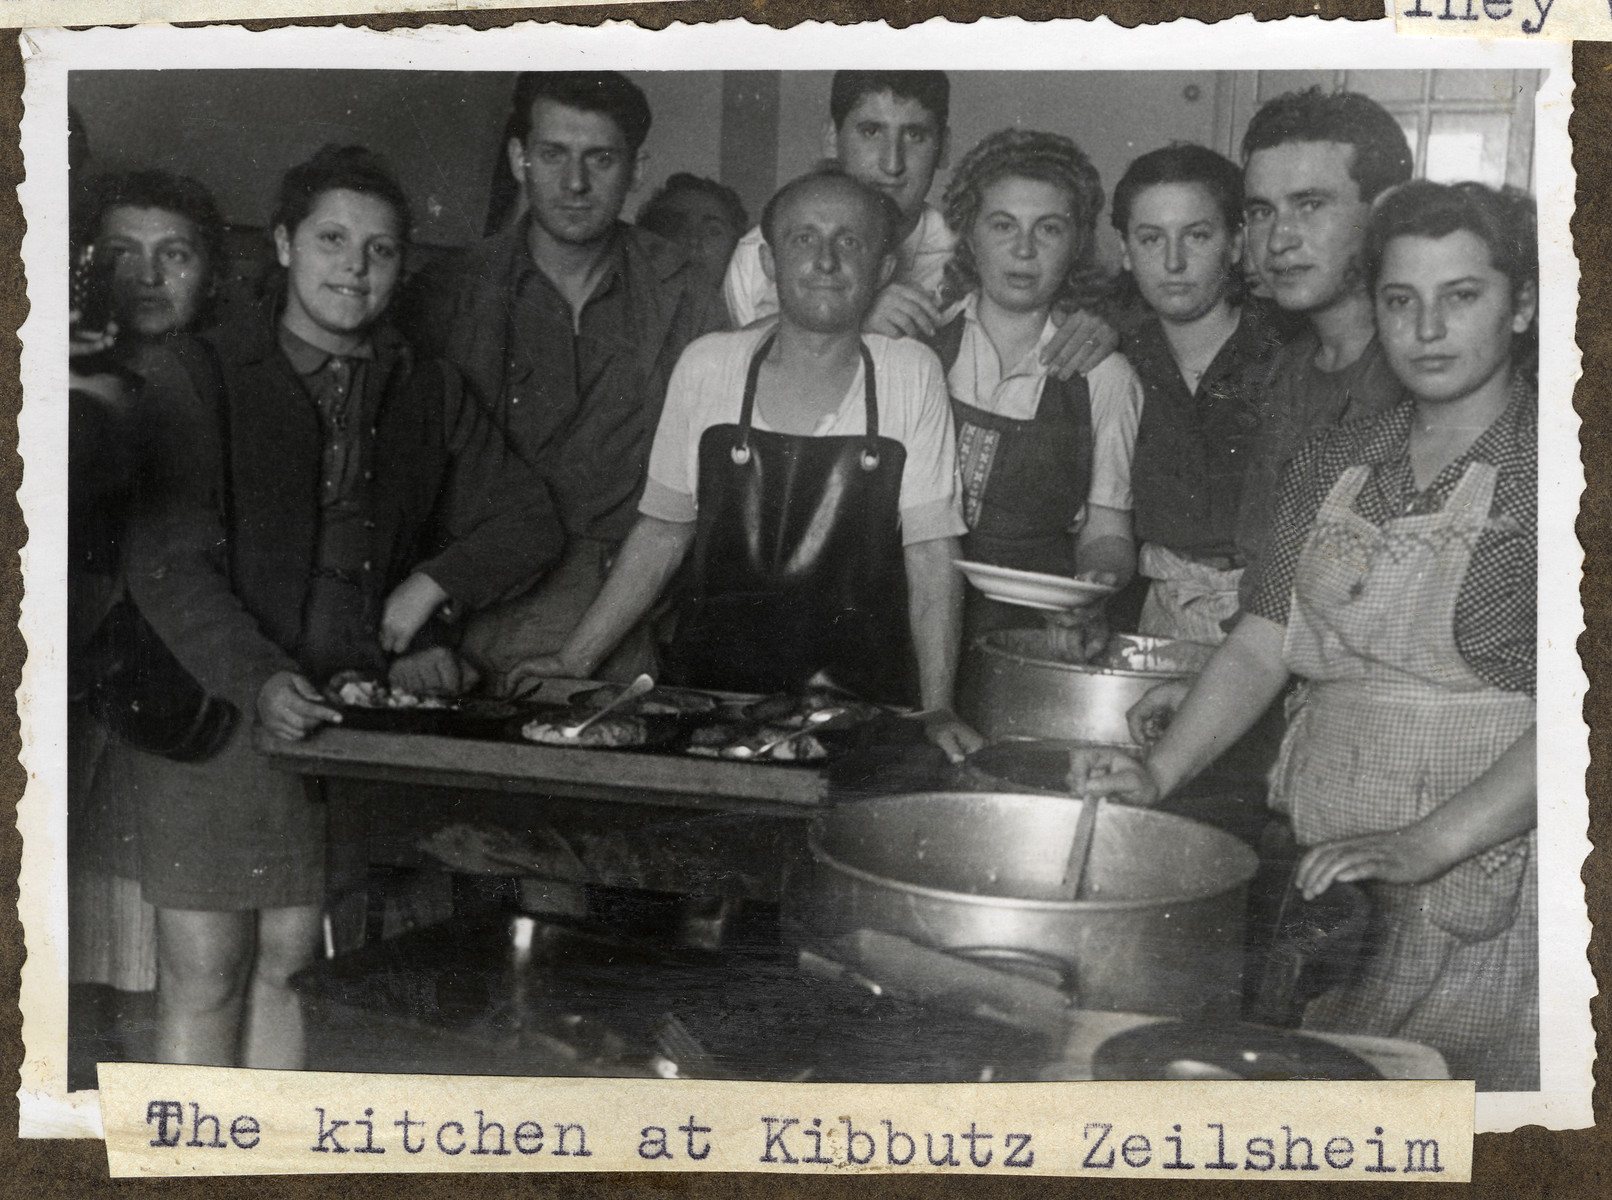 Jewish displaced persons gather around the stove in the kitchen in Kibbutz Zeilsheim